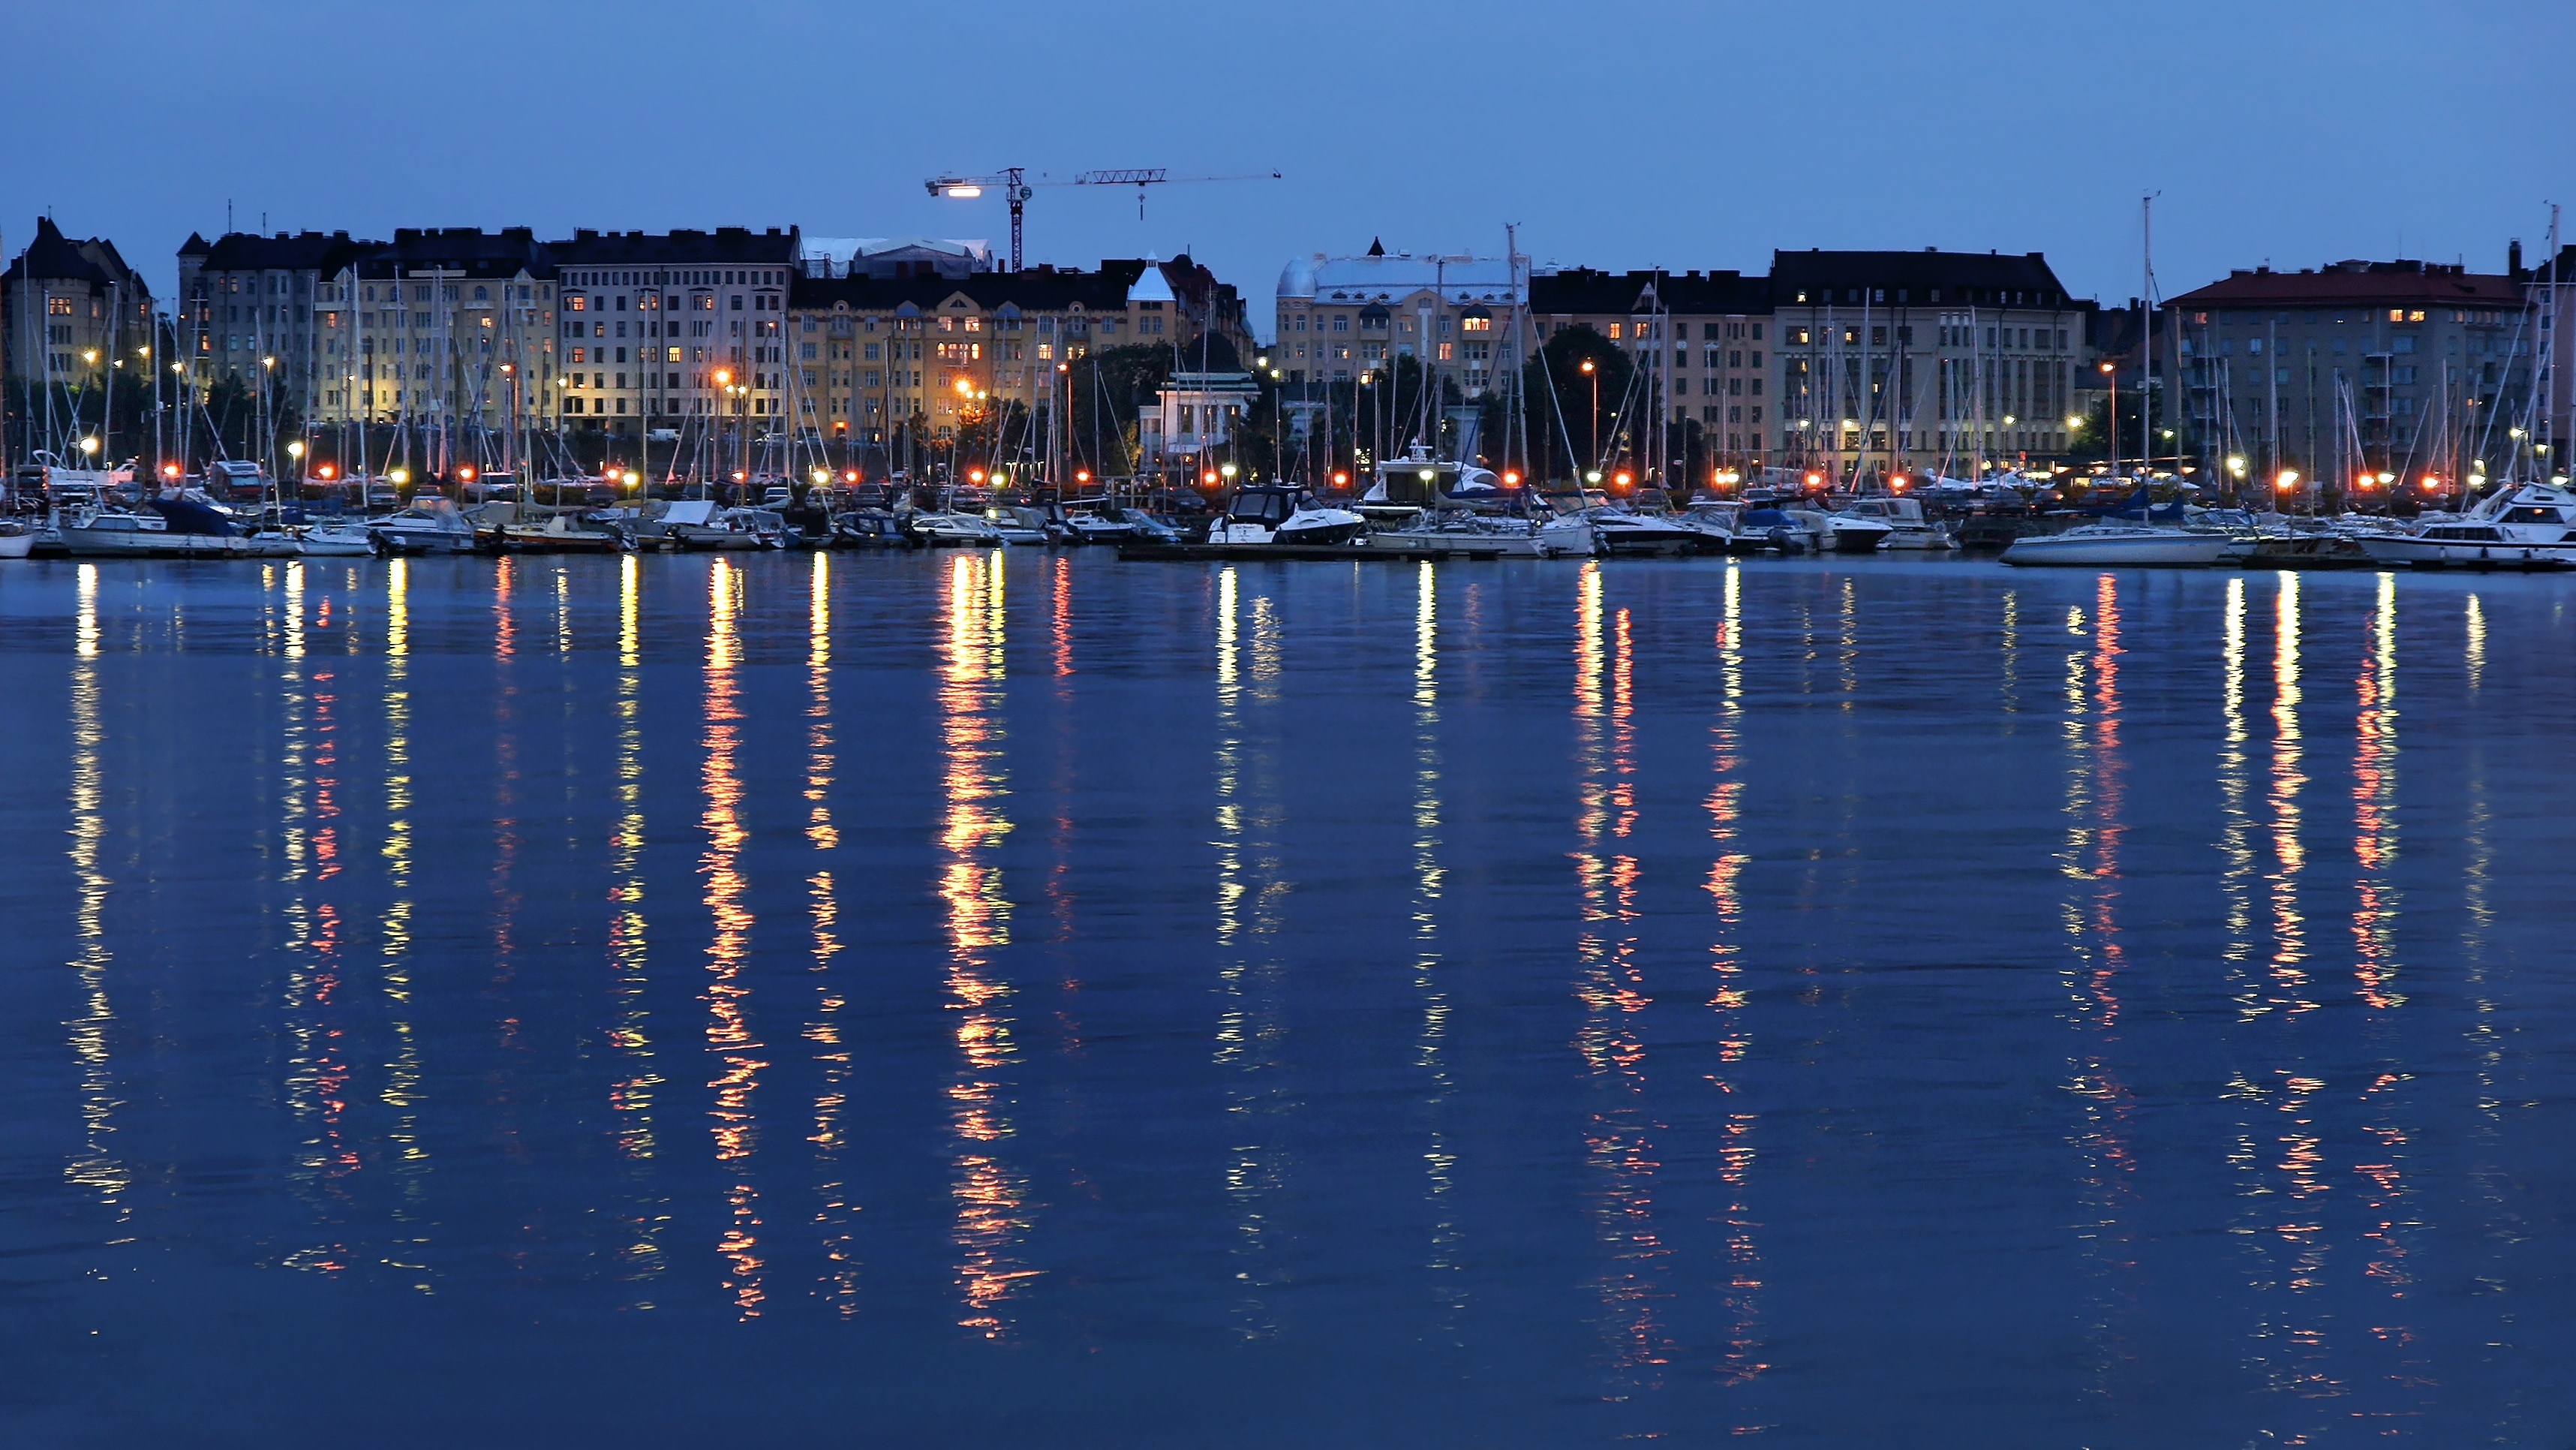 Finland, Helsinki, Finnish, Night, City, reflection, illuminated